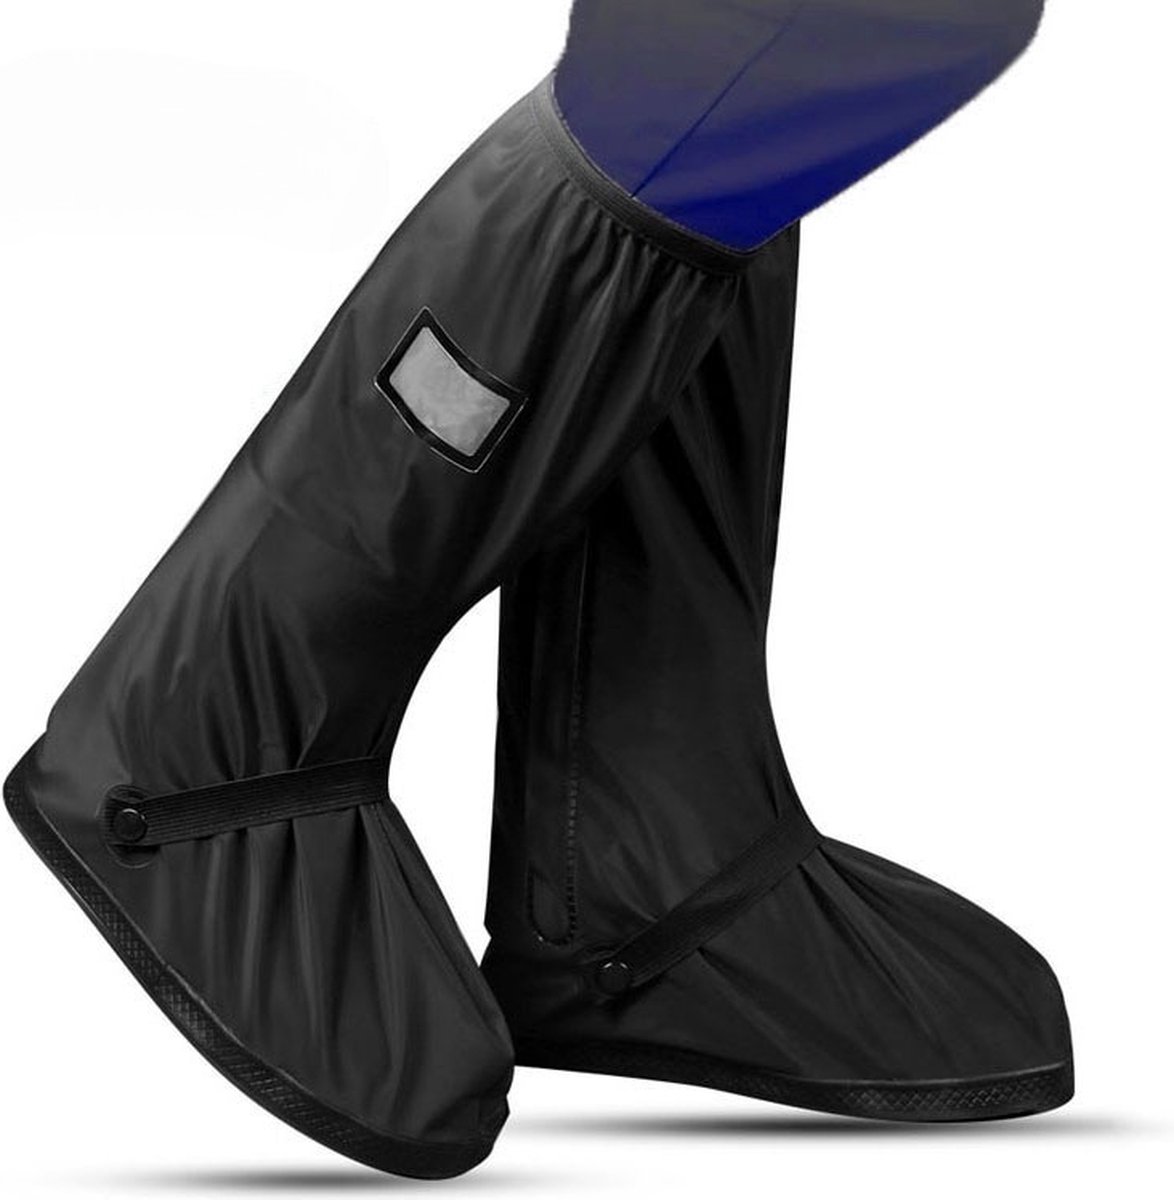 EASTWALL Cover Pro schoenhoezen - Schoenovertrek herbruikbaar - Bescherm je schoenen tegen water, modder en sneeuw - Universele waterdichte overschoenen - Schoenbeschermers - Anti-slip - Trekkoord afsluiting - Zwart - Maat 43-44